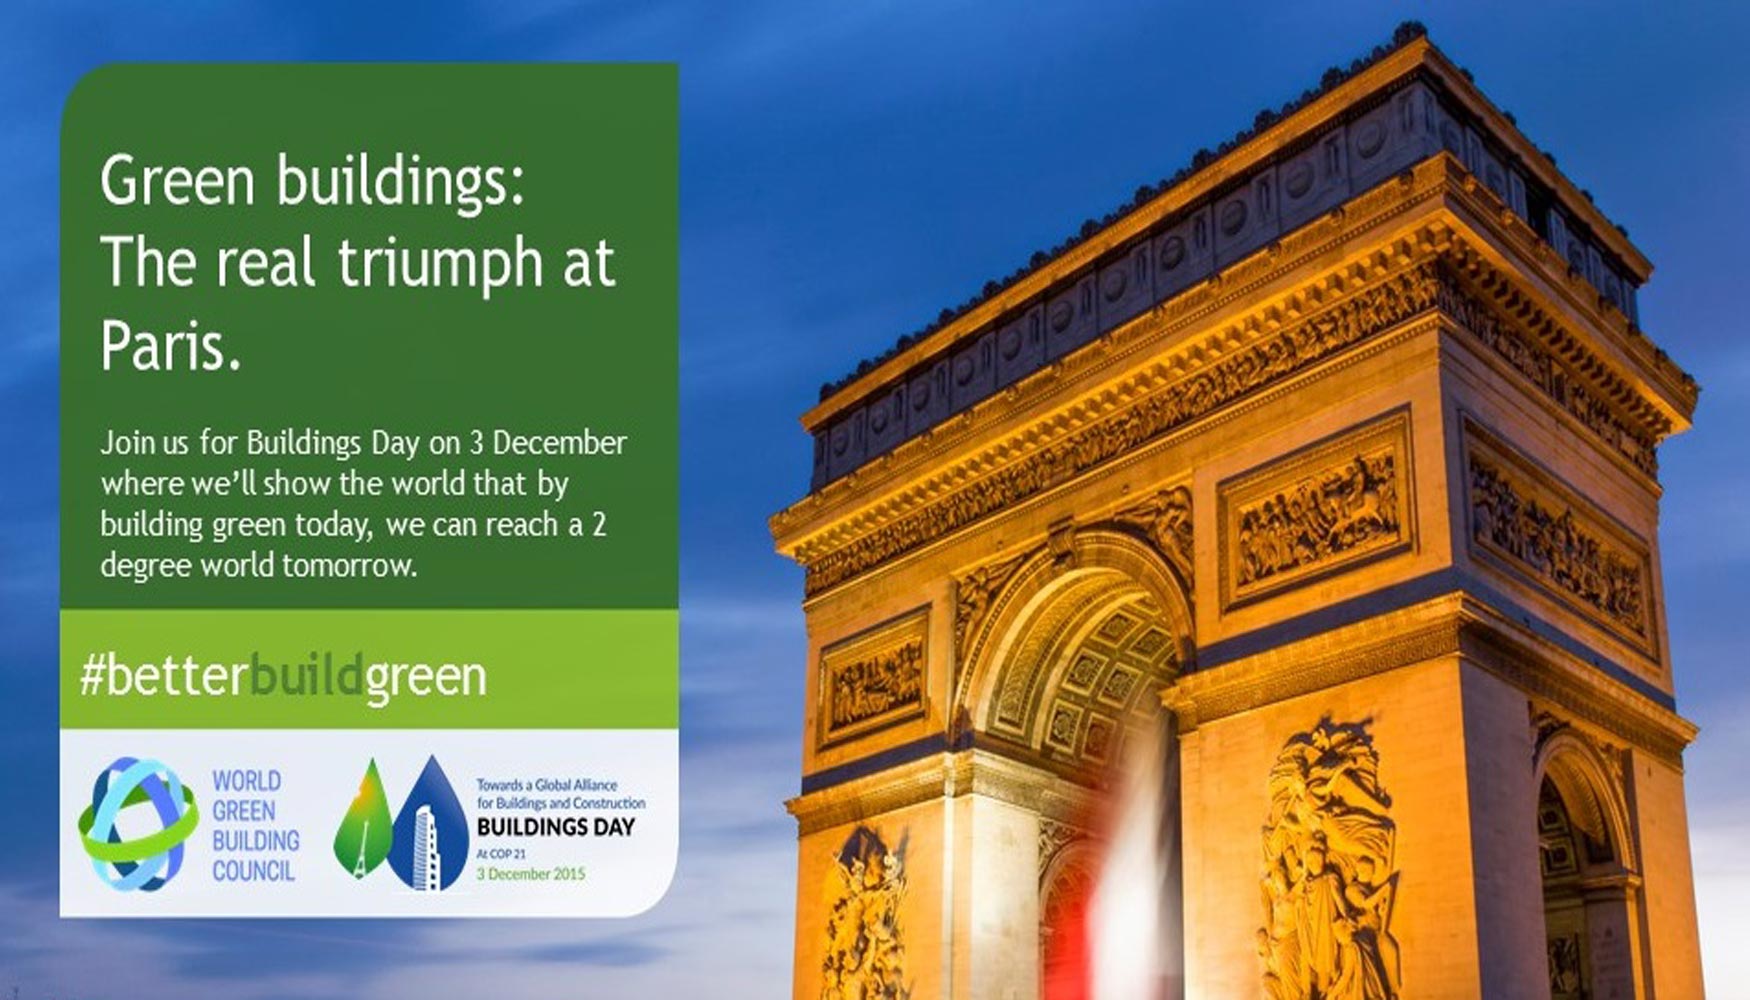 Los compromisos de World Green Building Council se enmarcan en la campaa Better Build Green centrada en la COP21 y el Da de los Edificios...